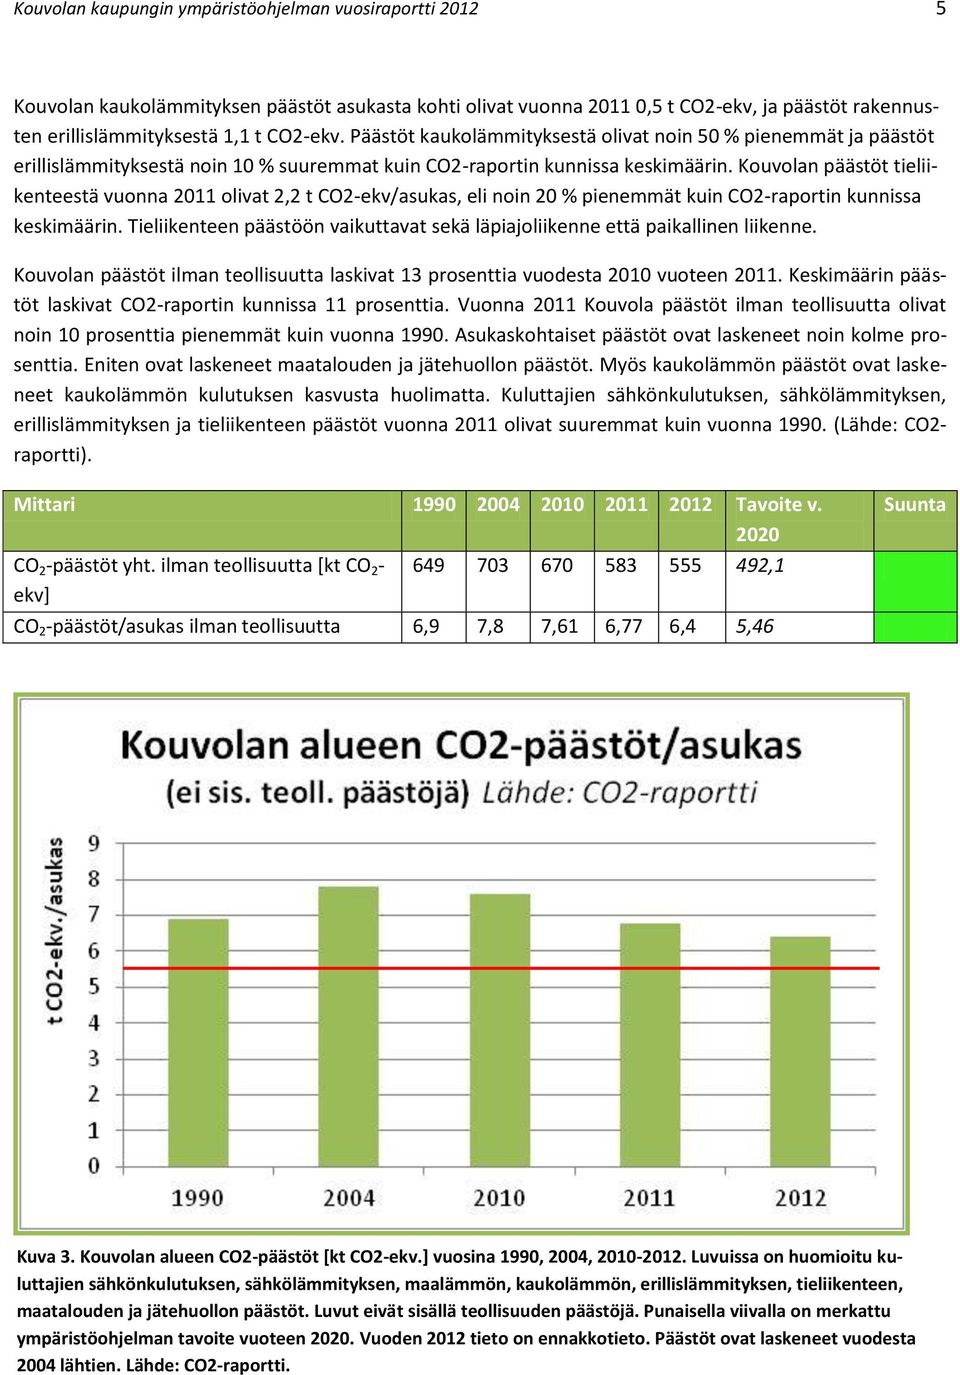 Kouvolan päästöt tieliikenteestä vuonna 2011 olivat 2,2 t CO2-ekv/asukas, eli noin 20 % pienemmät kuin CO2-raportin kunnissa keskimäärin.